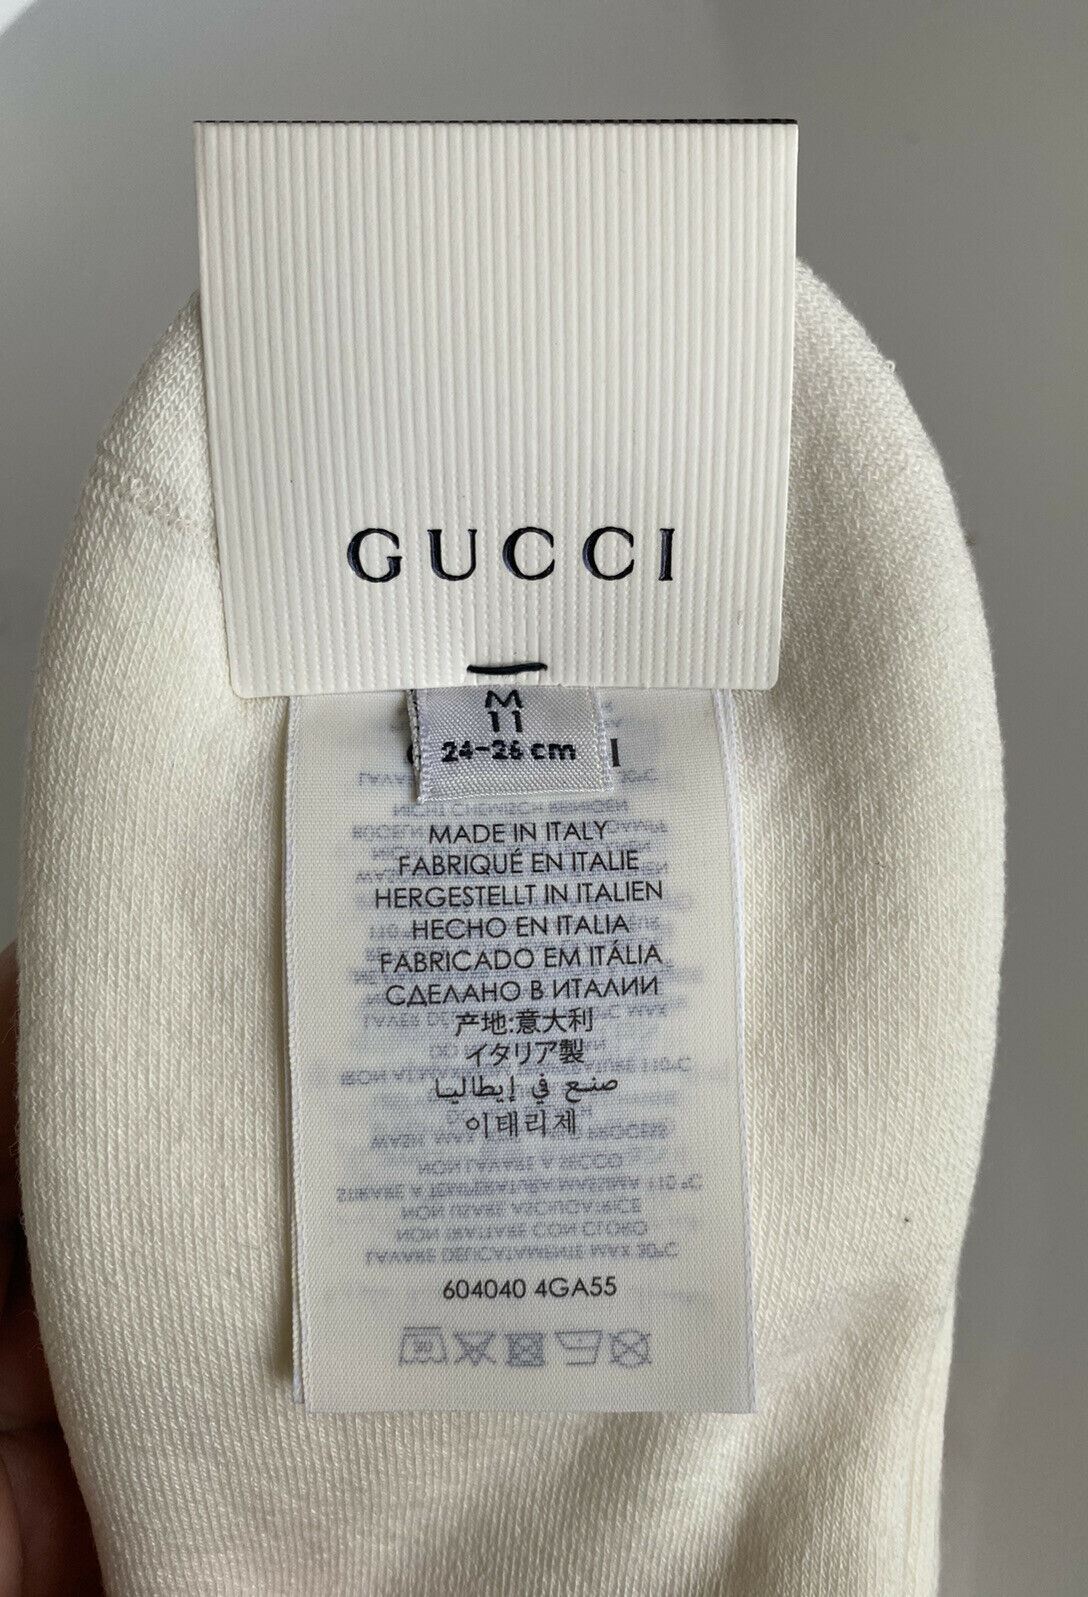 Neu mit Etikett: Gucci Lit Spon Weiß/Grün/Rot Socken ML (24–26 cm), hergestellt in Italien, 604040 